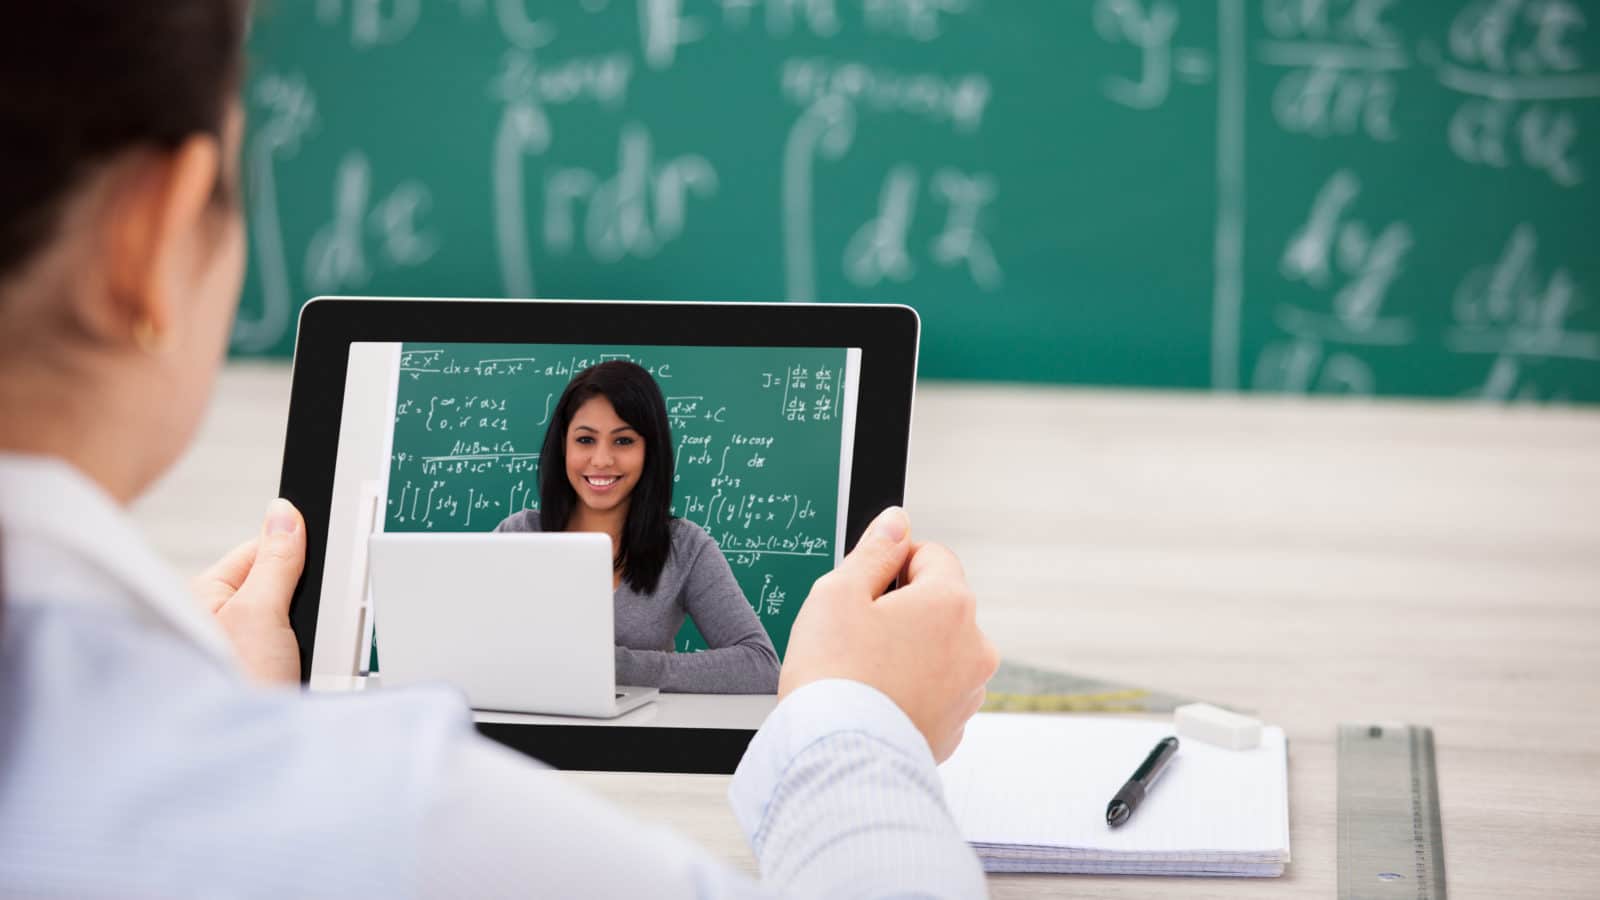 an online teacher certification program can jumpstart your teaching career.